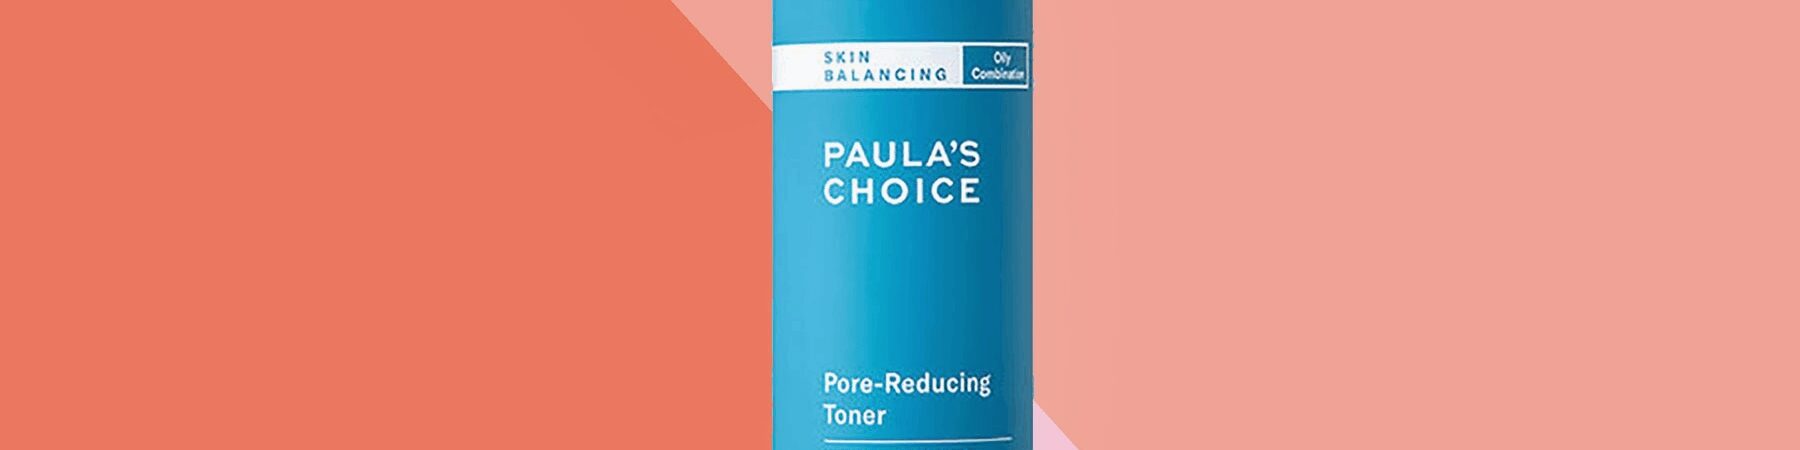 Paulas Choice Skincare Cyber Monday 2020 2 1800x450 - Paula's Choice Skincare Cyber Monday 2022